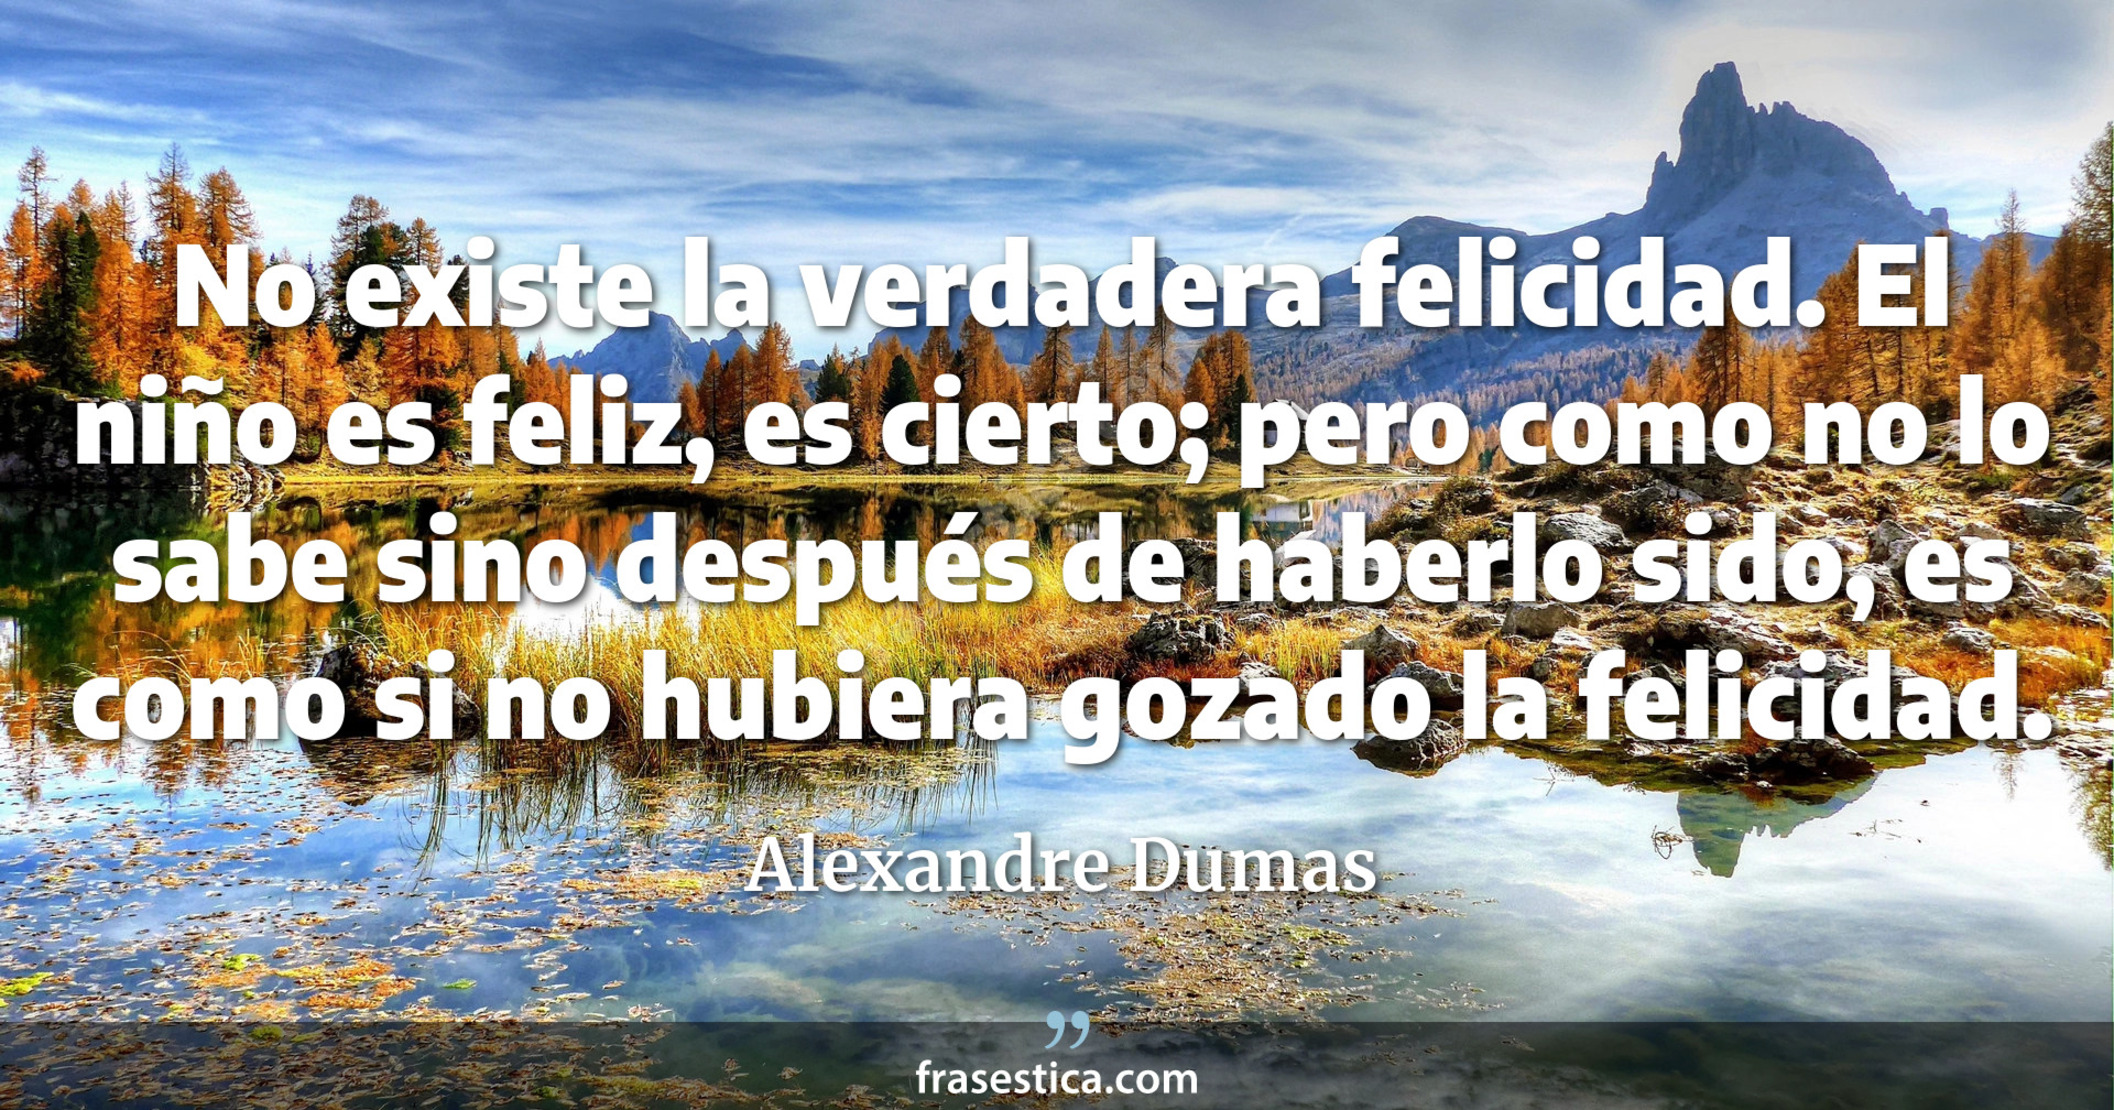 No existe la verdadera felicidad. El niño es feliz, es cierto; pero como no lo sabe sino después de haberlo sido, es como si no hubiera gozado la felicidad. - Alexandre Dumas